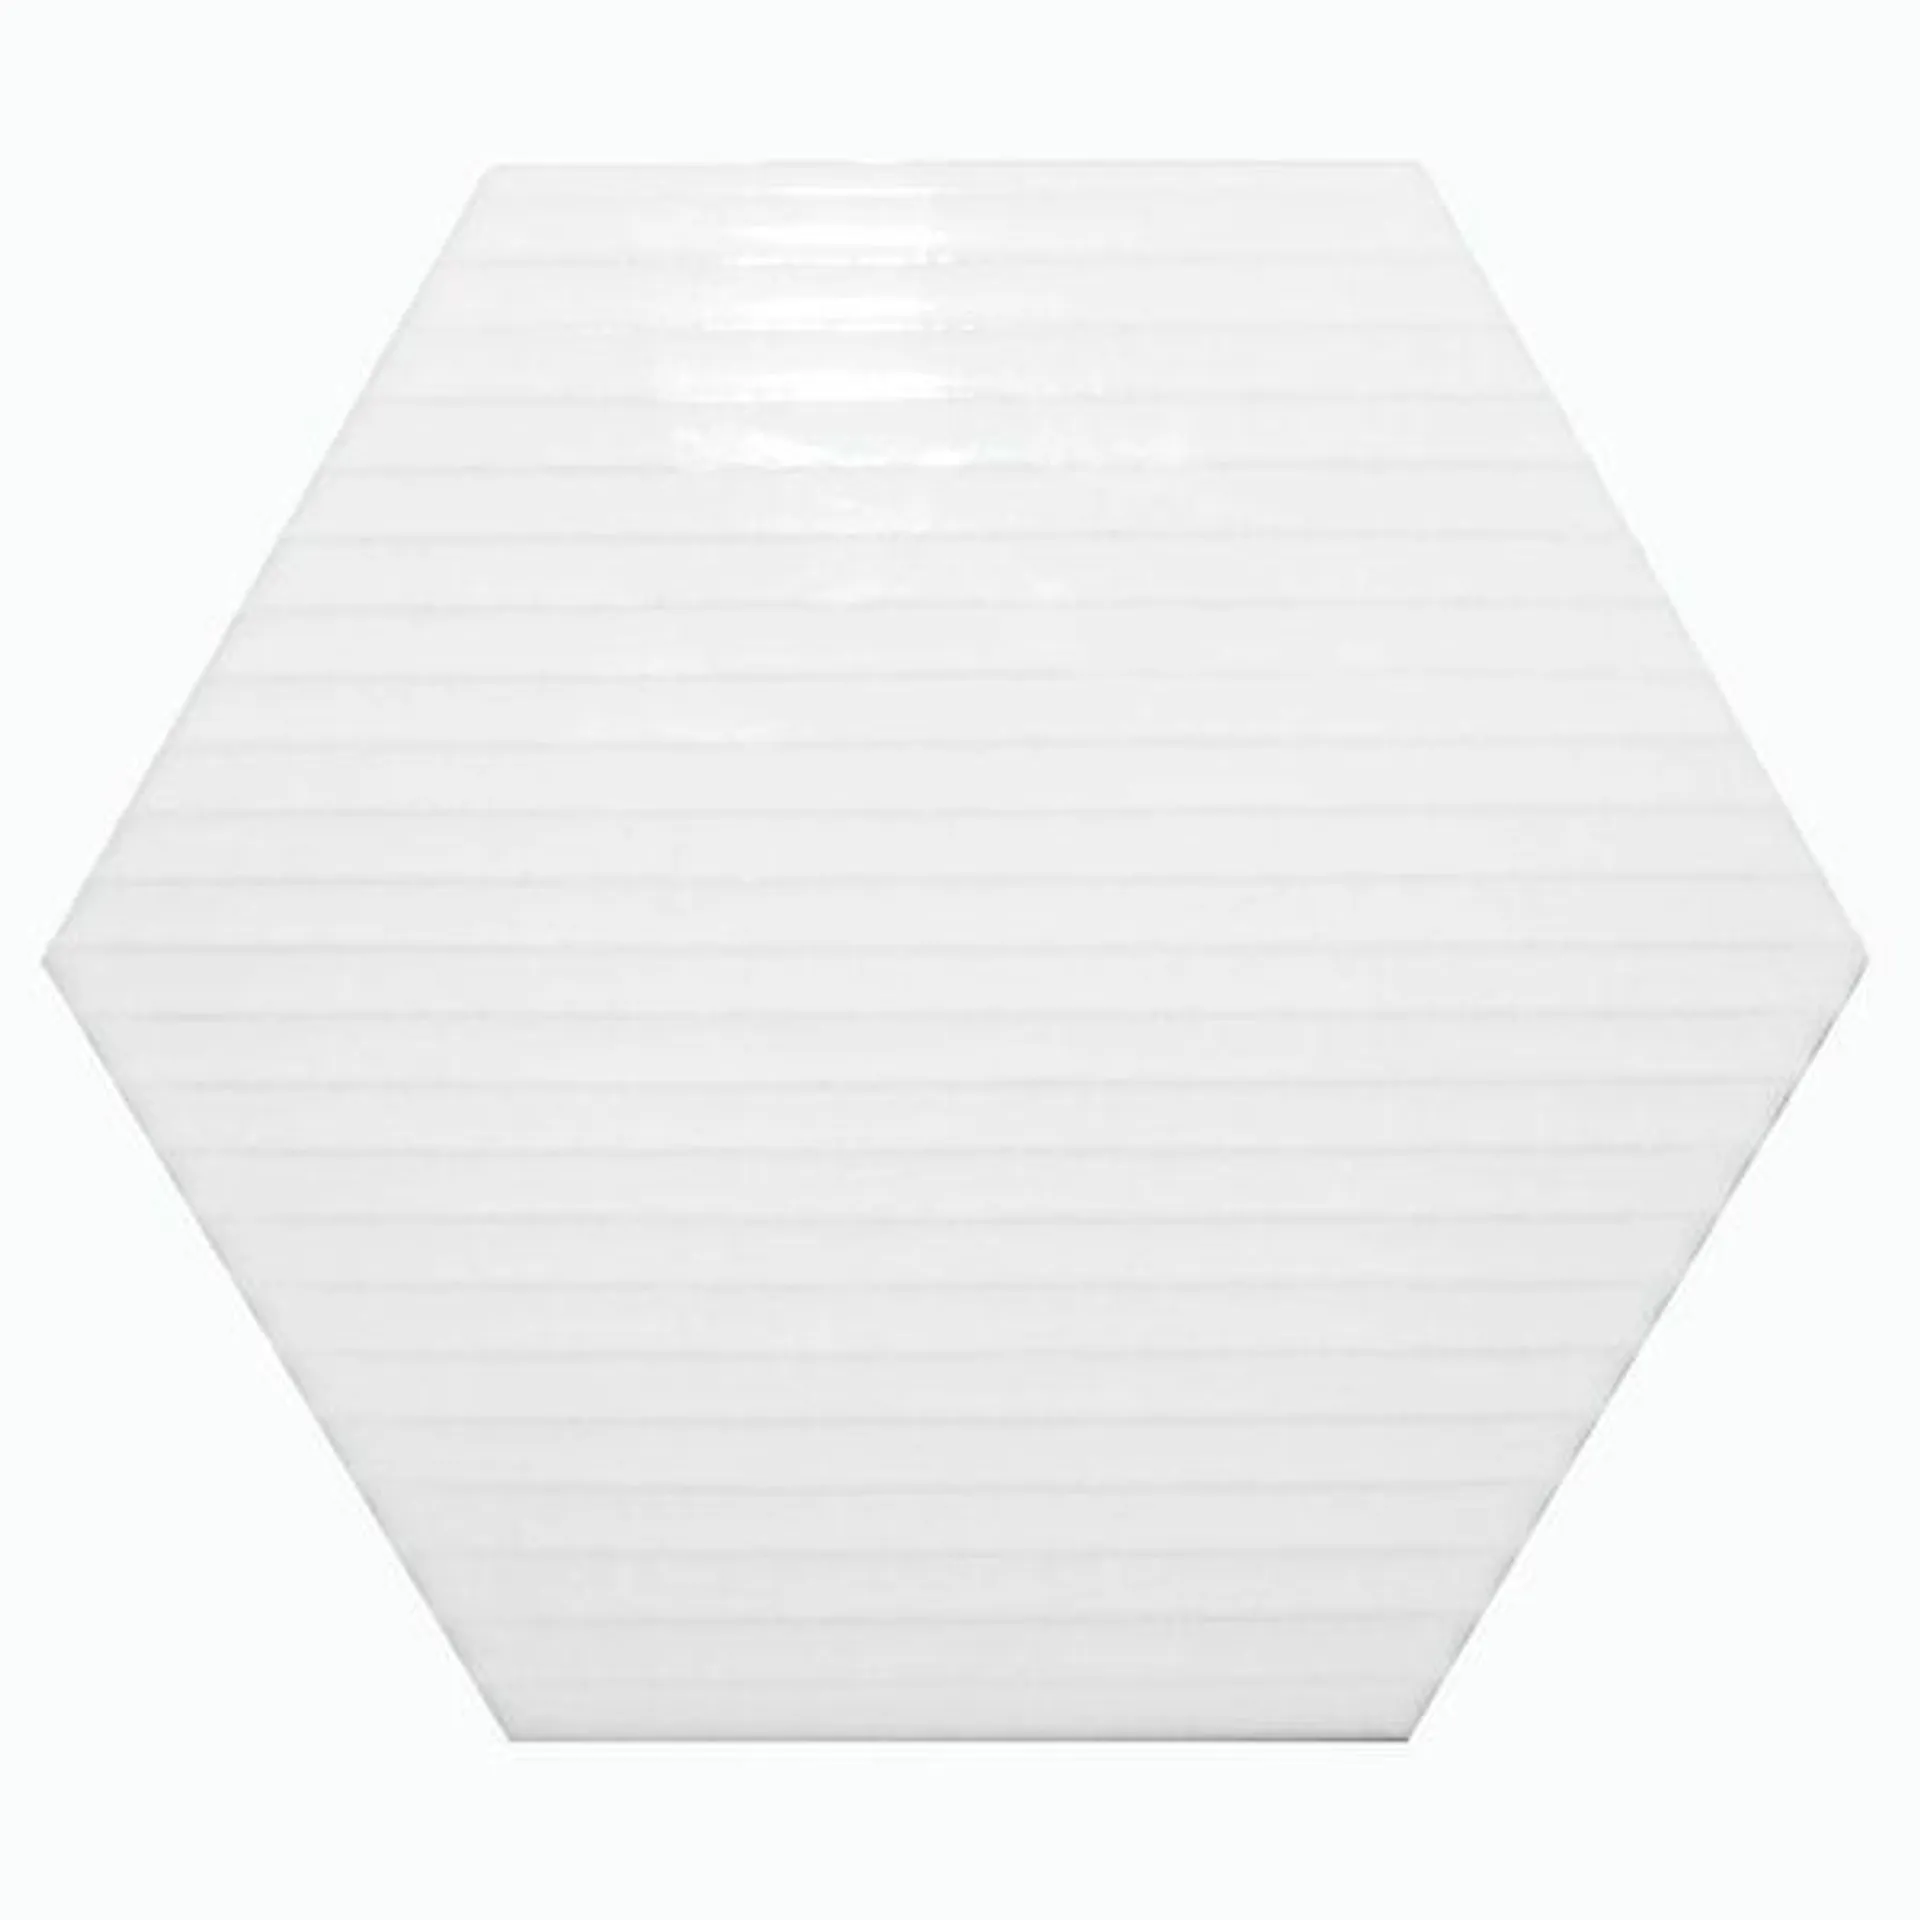 Carton White Gloss Hexagon Tiles